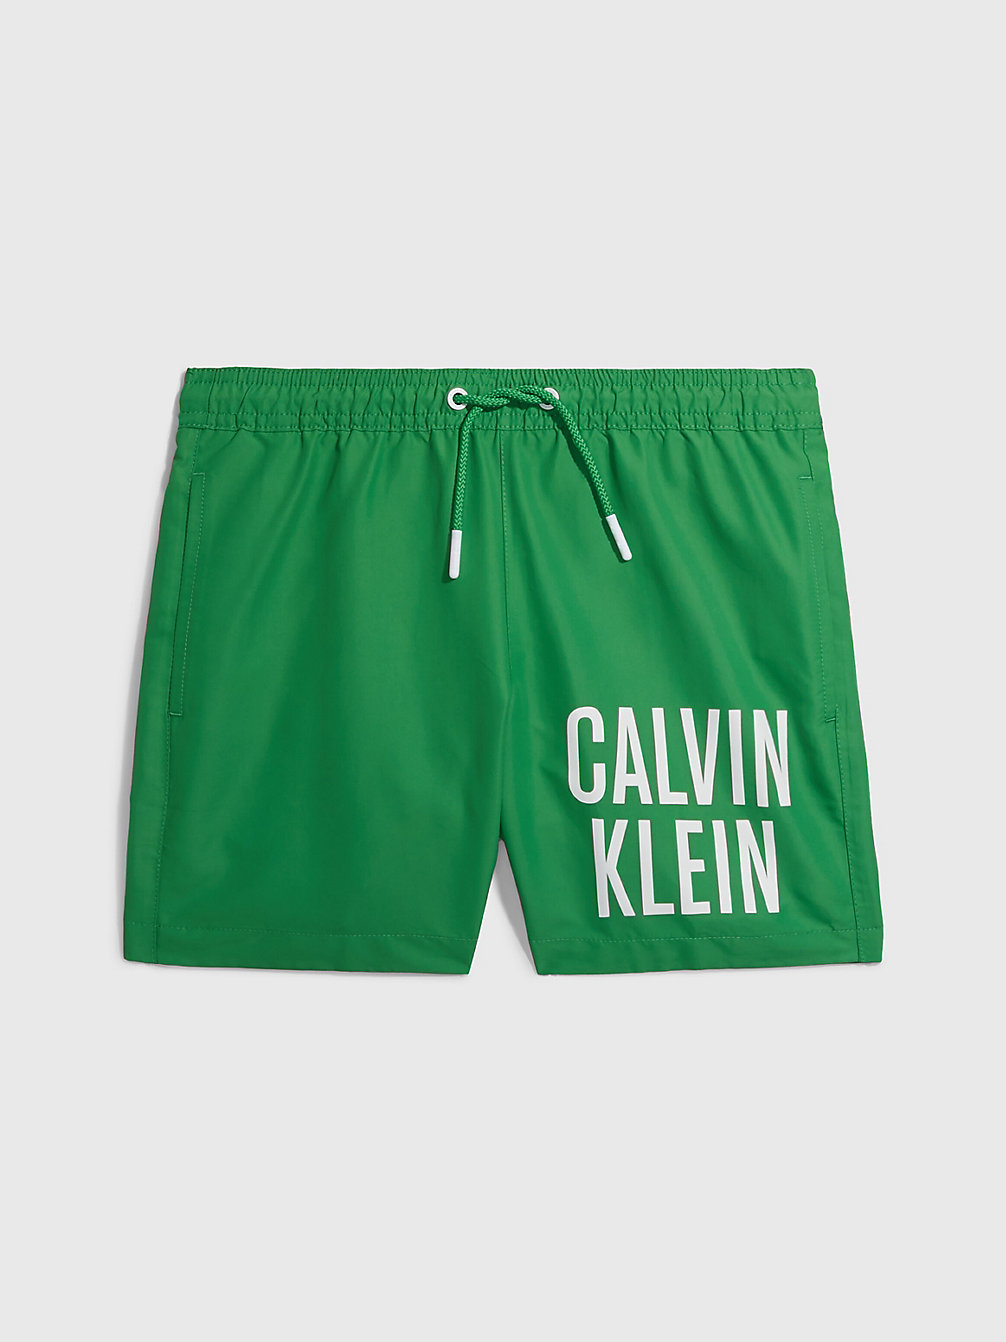 GREEN APPLE Badehose Für Jungen - Intense Power undefined Jungen Calvin Klein